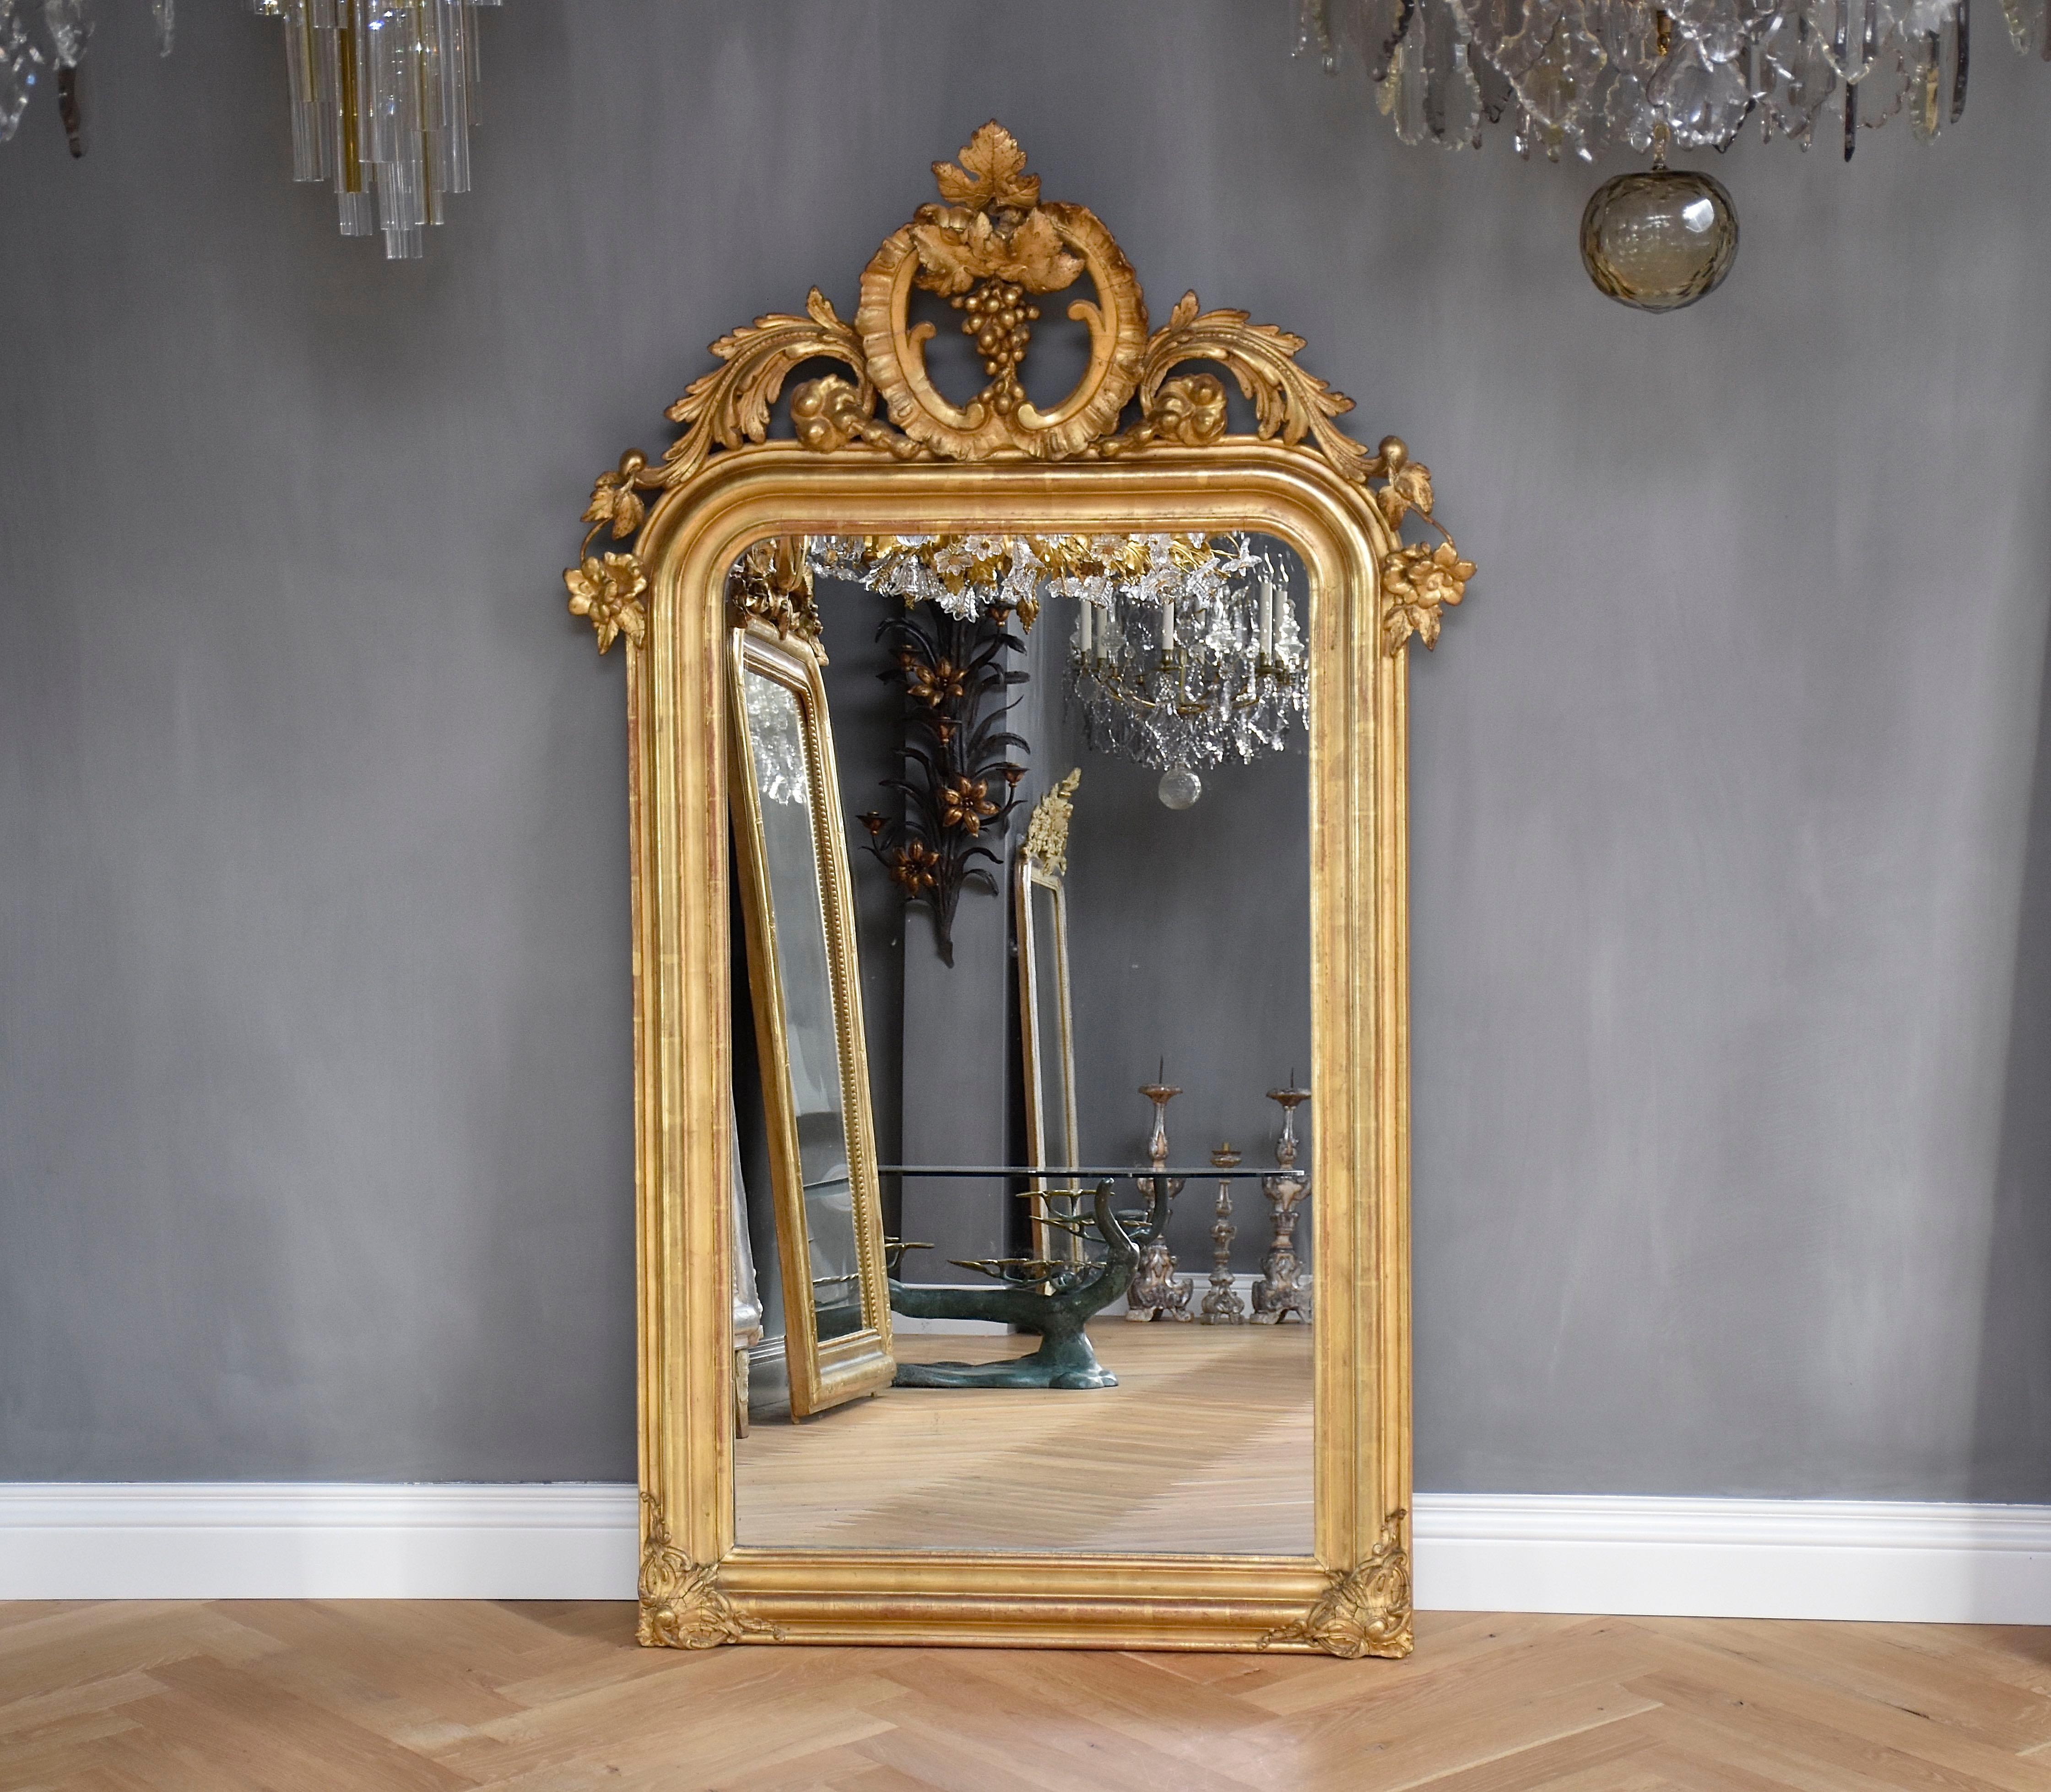 Ein wunderbarer vergoldeter französischer Spiegel aus dem 19. Jahrhundert mit seinem originalen, leicht stockfleckigen Antikglas und einer schönen Krone.
Die Krone ist mit Blumen, Blättern, C-Rollen und Weintrauben verziert.
Die Ecken mit hübschen